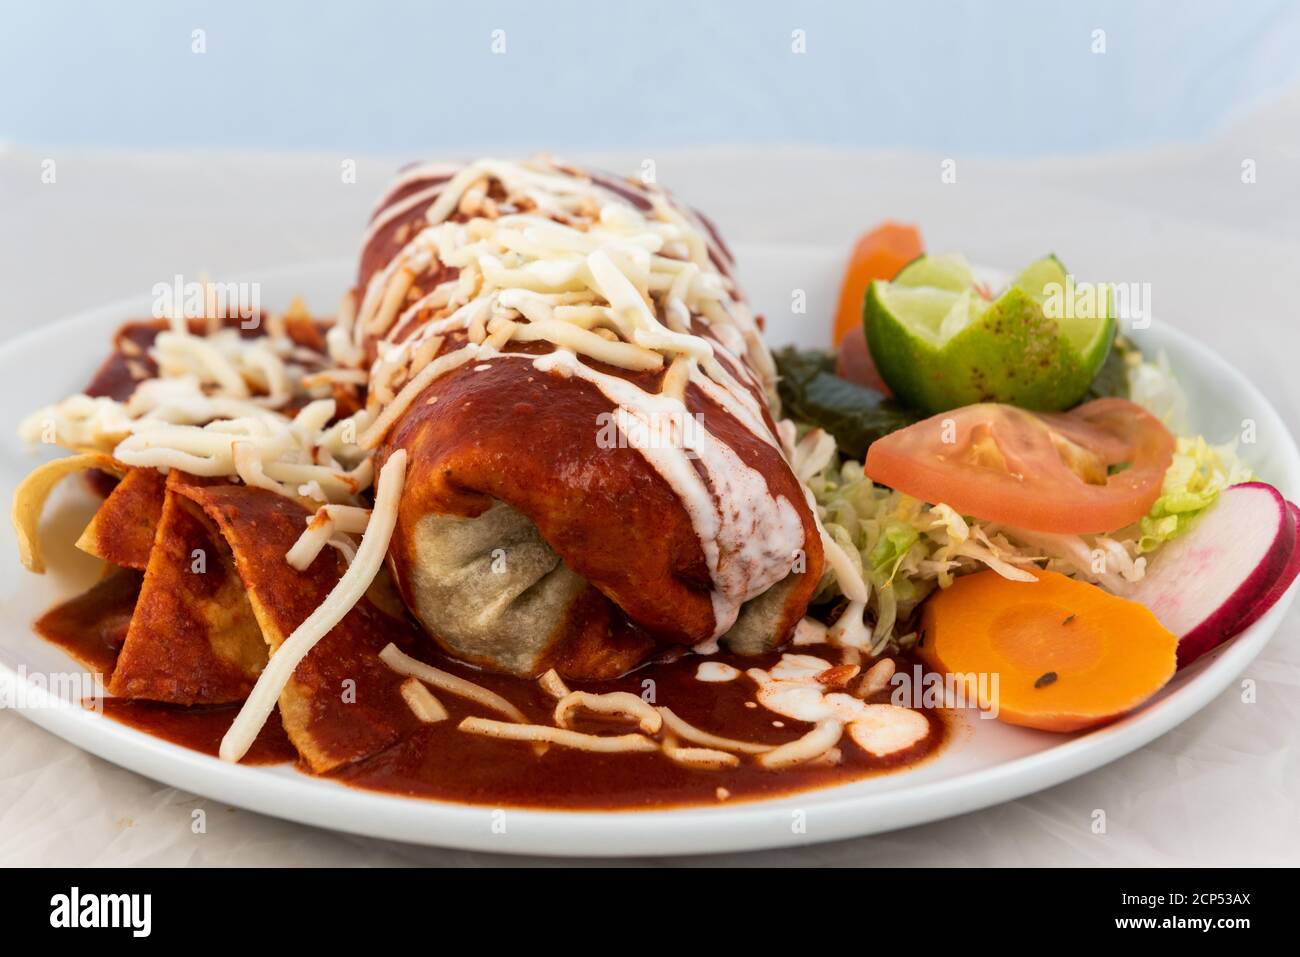 Mouillez le burrito de ranchero avec du riz et des haricots servis sur une plaque chaude pour quelques délicieux plats mexicains. Banque D'Images